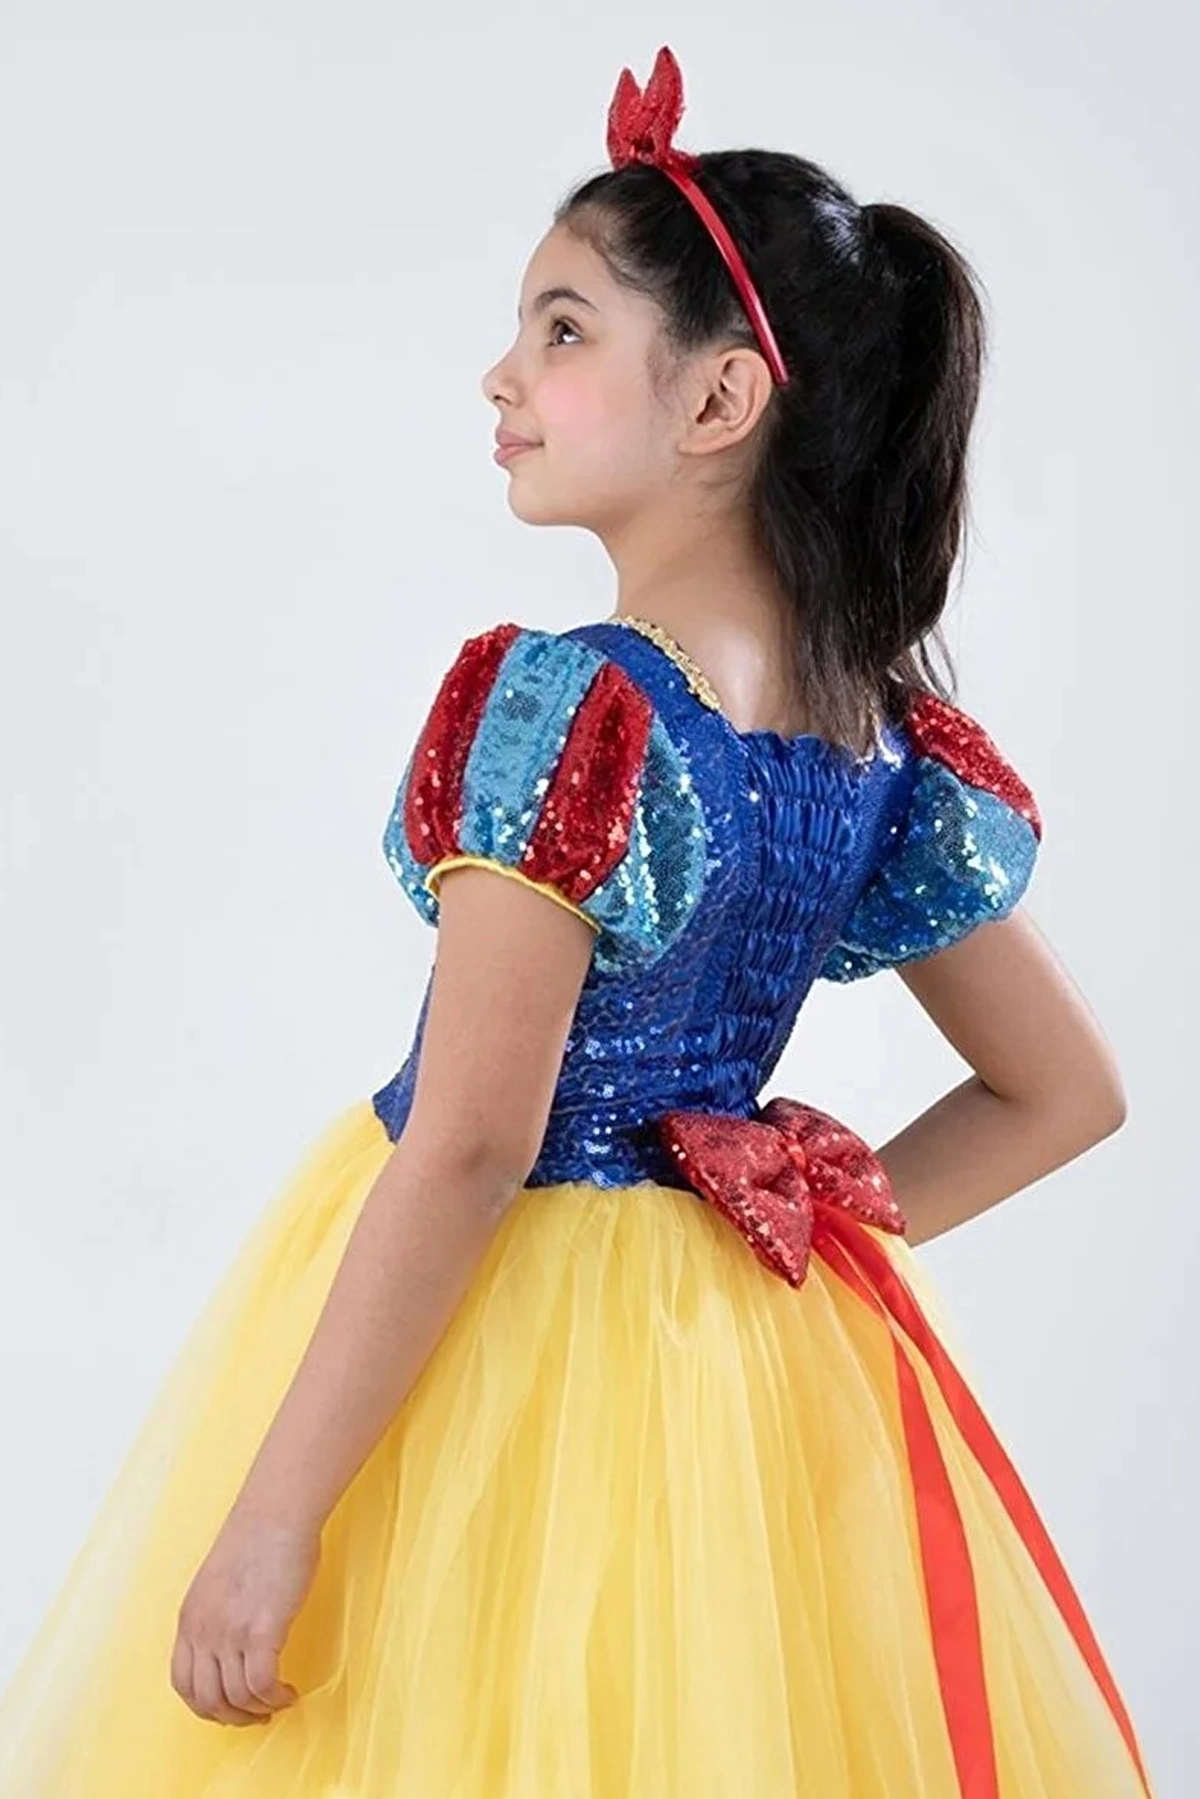 لباس عروسکی دخترانه مدل سفید برفی زرد آبی برند Mashotrend